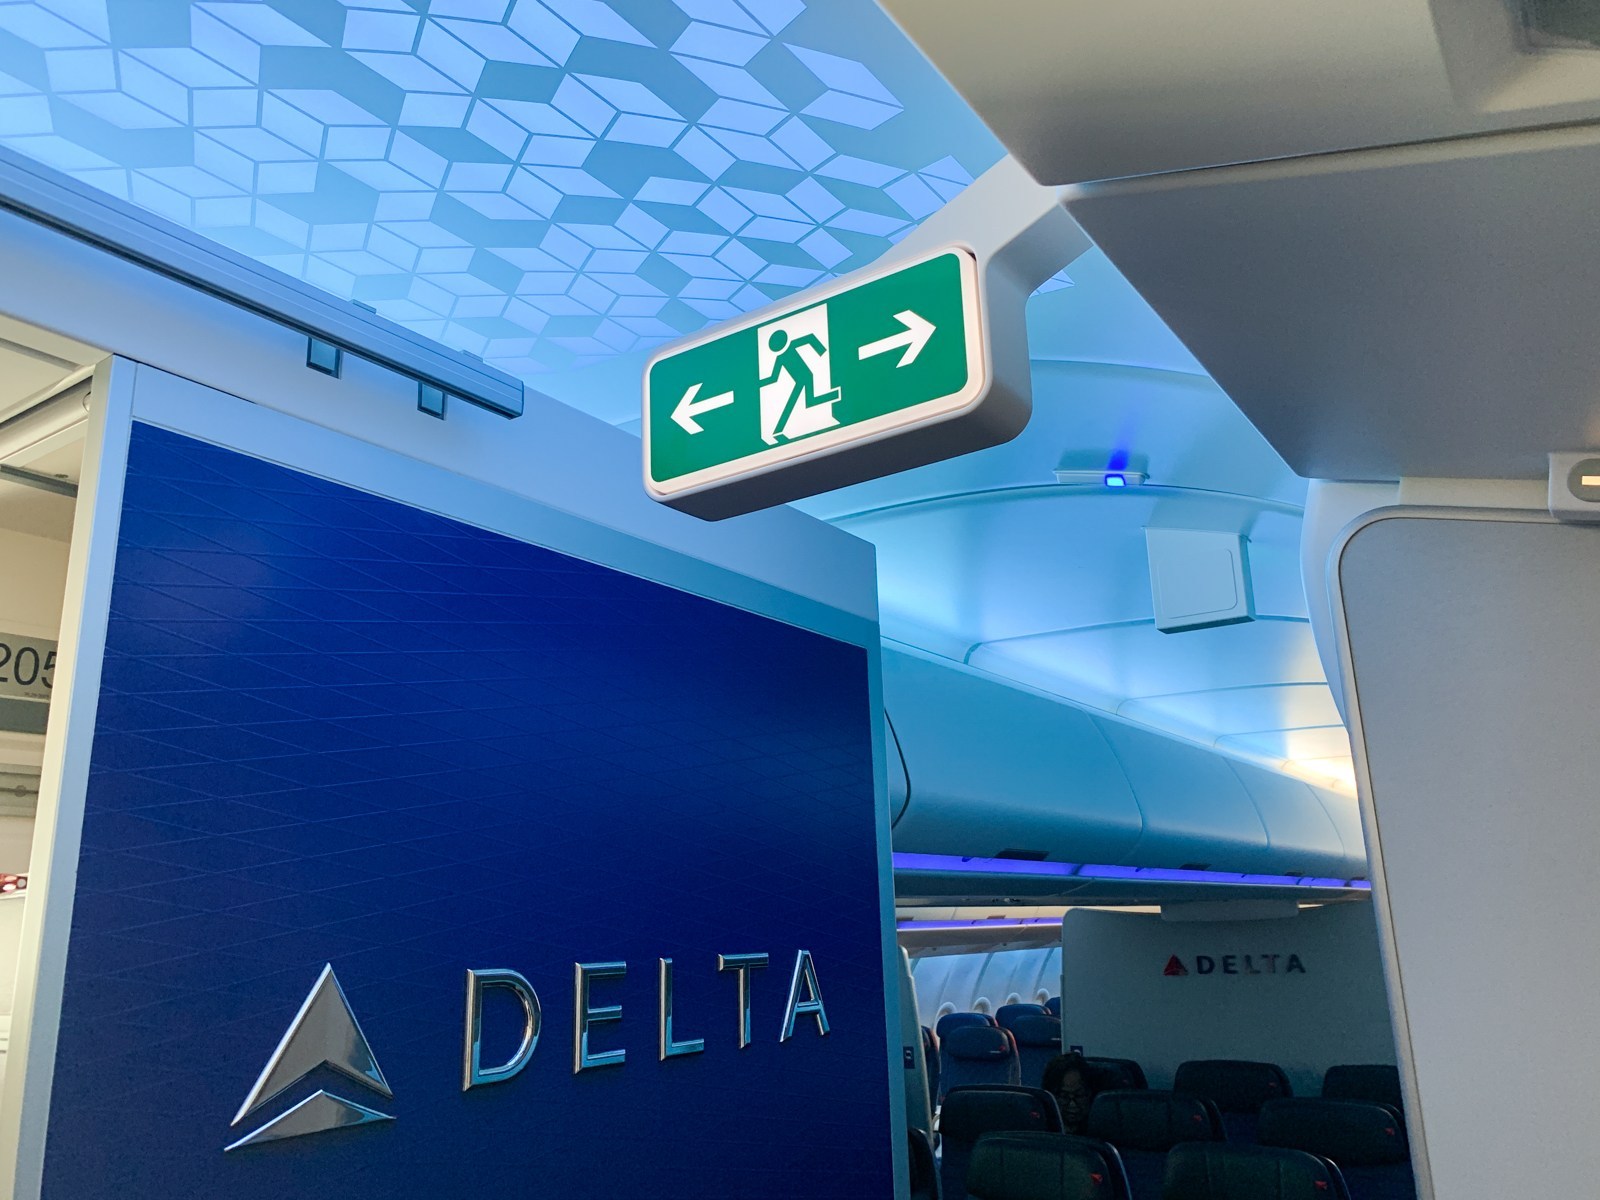 Delta-A330-900neo-Flight-23.jpg